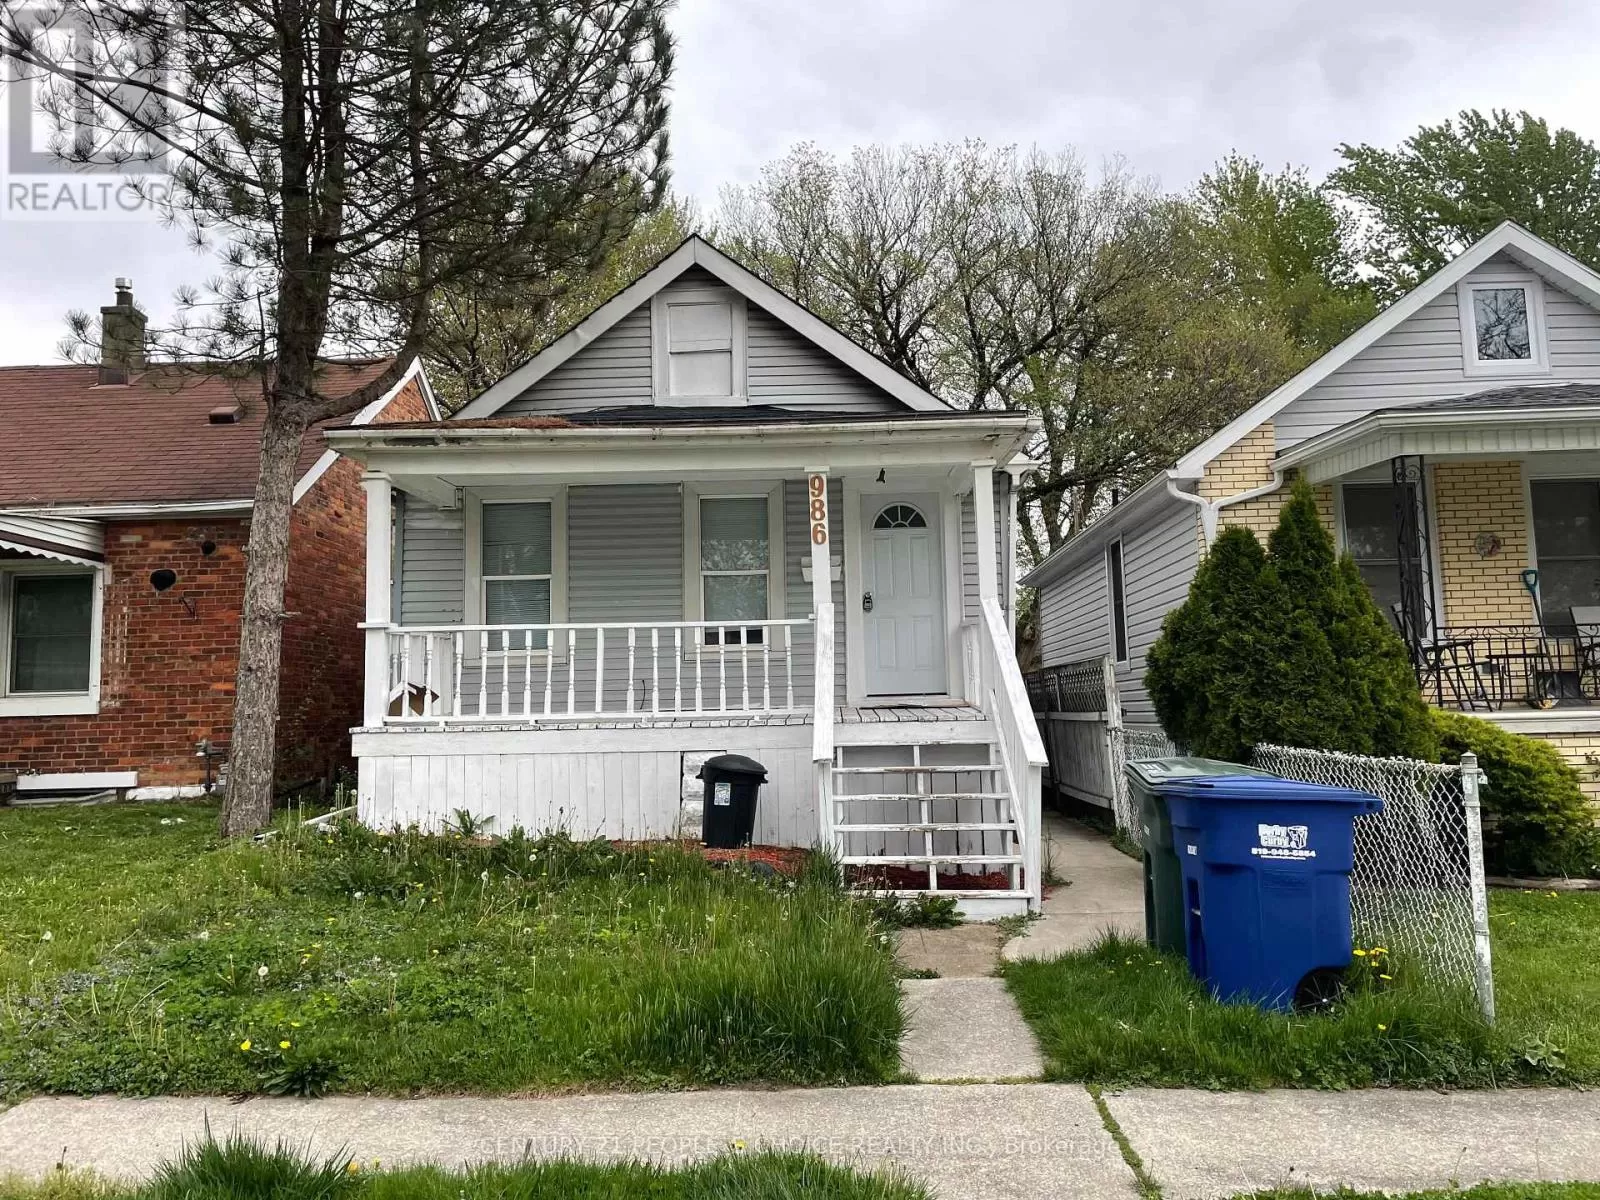 House for rent: 986 Bridge Avenue, Windsor, Ontario N9B 2N1